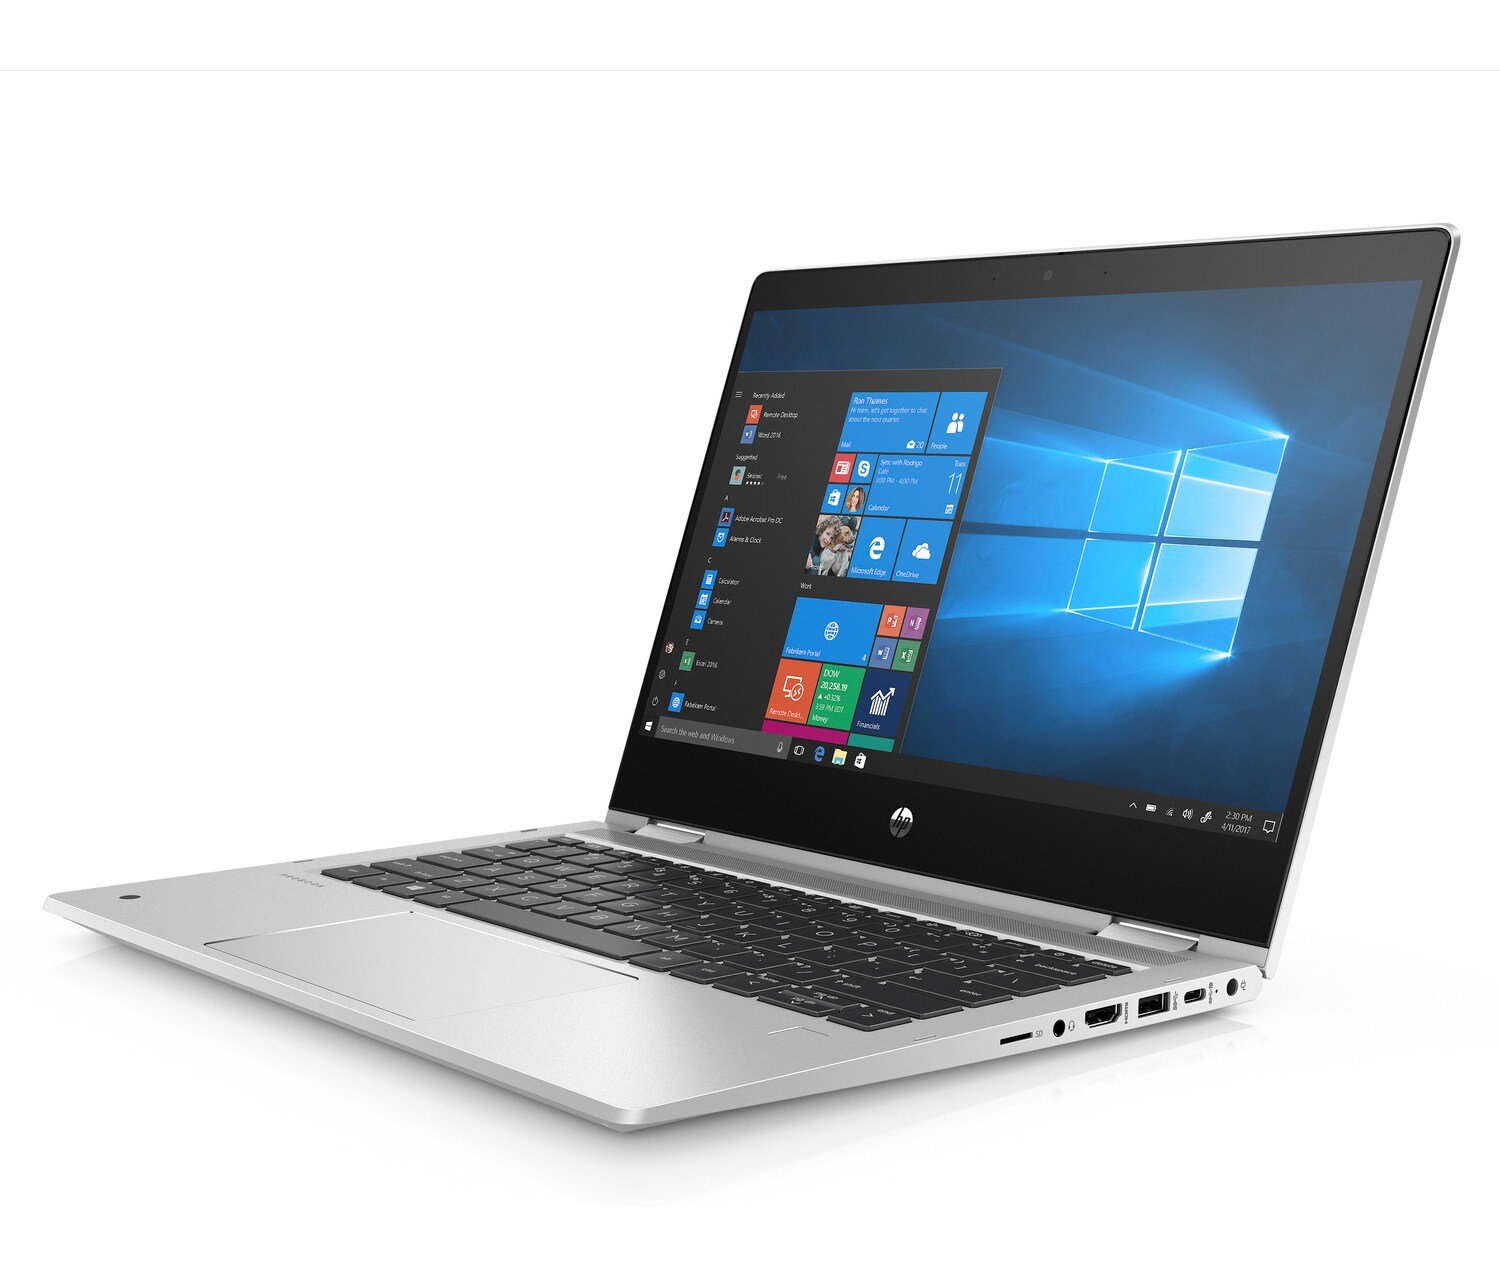 Notebook HP ProBook x360 435 G7 srebrny widok na ekran od lewego boku